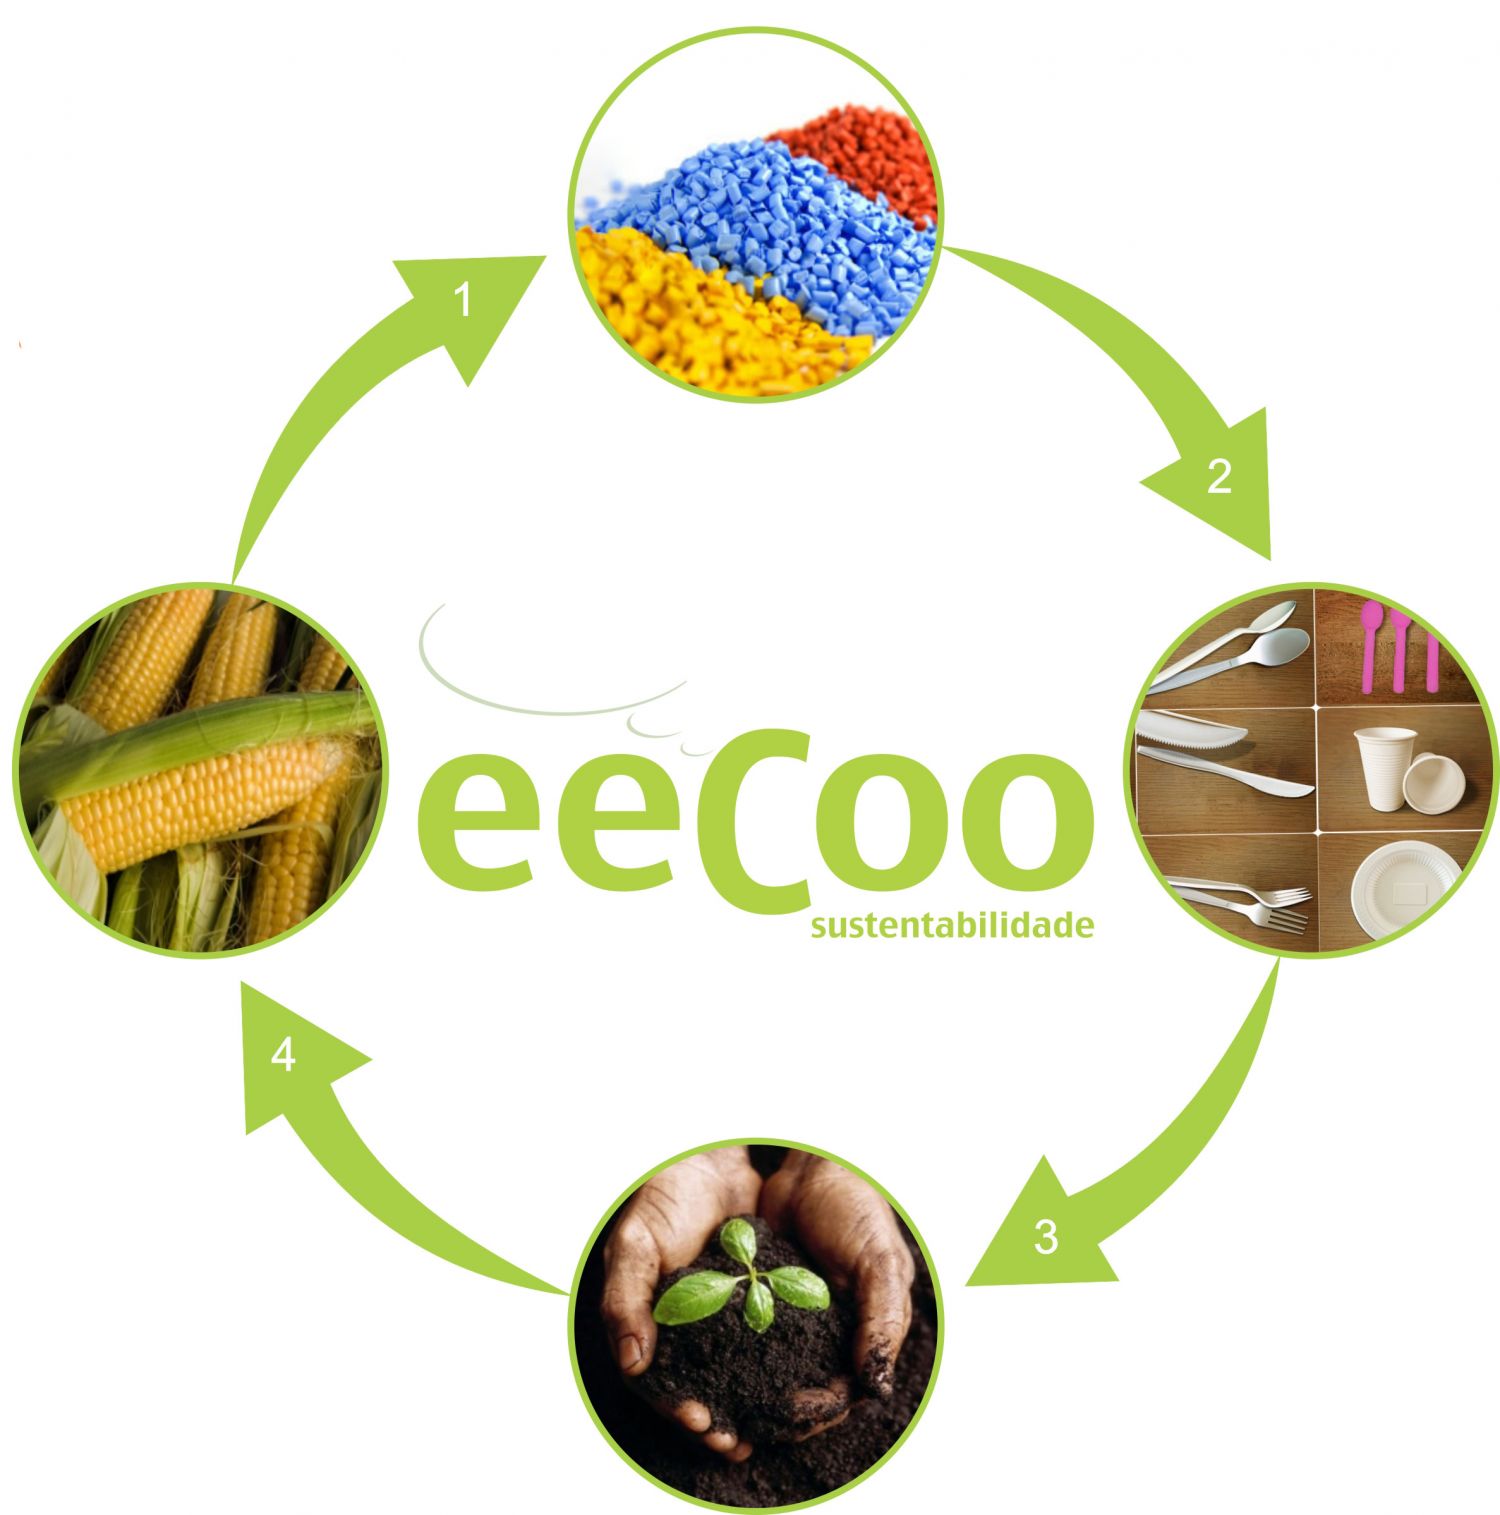 Economia Circular - eeCoo sustentabilidade